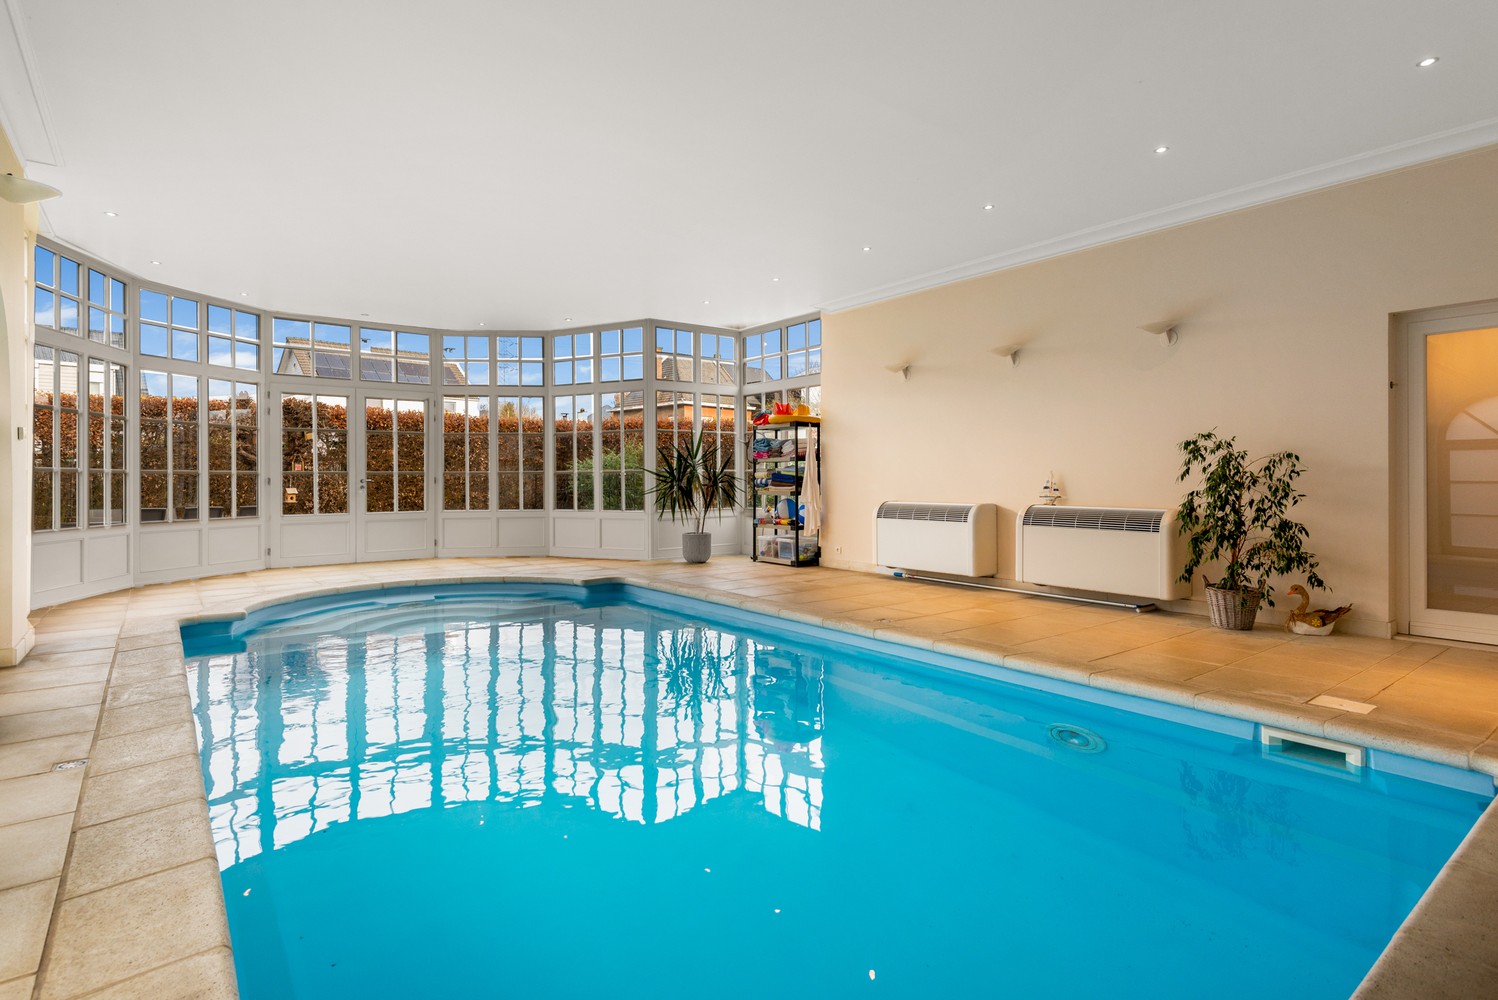 Prachtige villa met binnenzwembad op een perceel van ± 910m² in Wijnegem! afbeelding 15